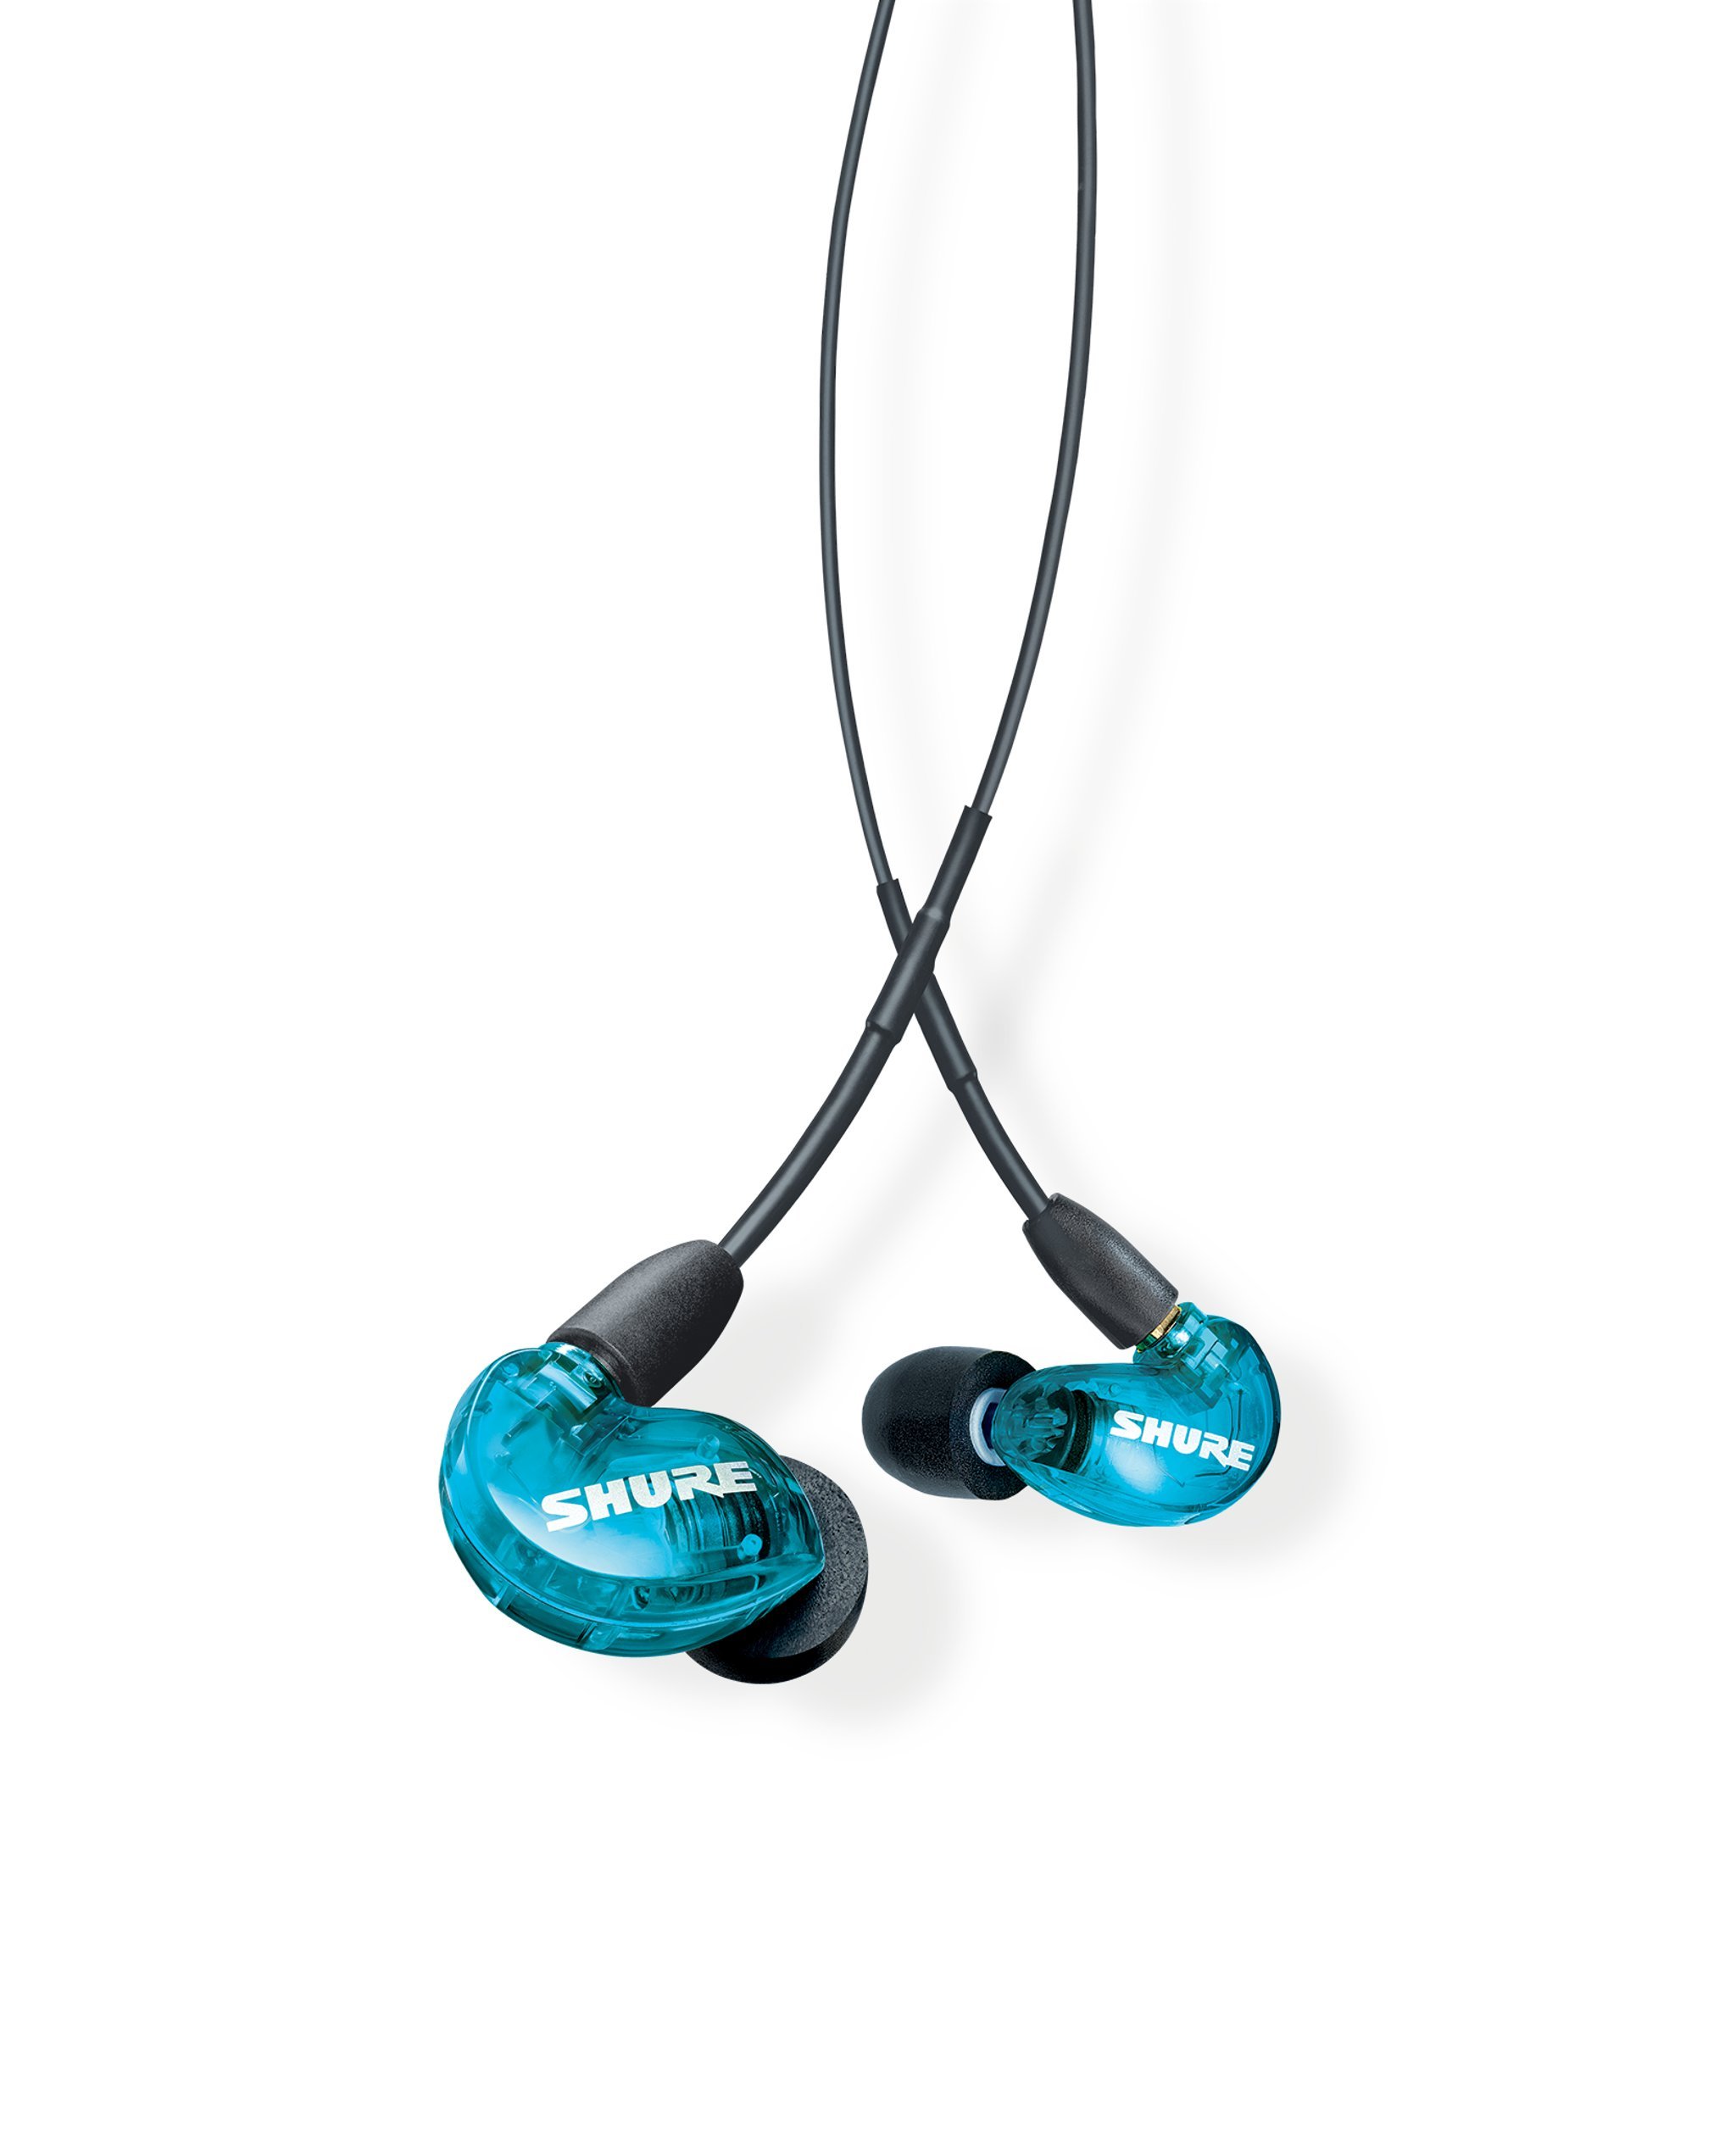 Shure SE215 PRO 有线耳塞 - 专业隔音耳机，清晰的声音和深沉的低音，单动圈微型驱动器，牢固贴合入耳式监听器，加上便携包和贴合套件 - 蓝色 (SE215SPE)